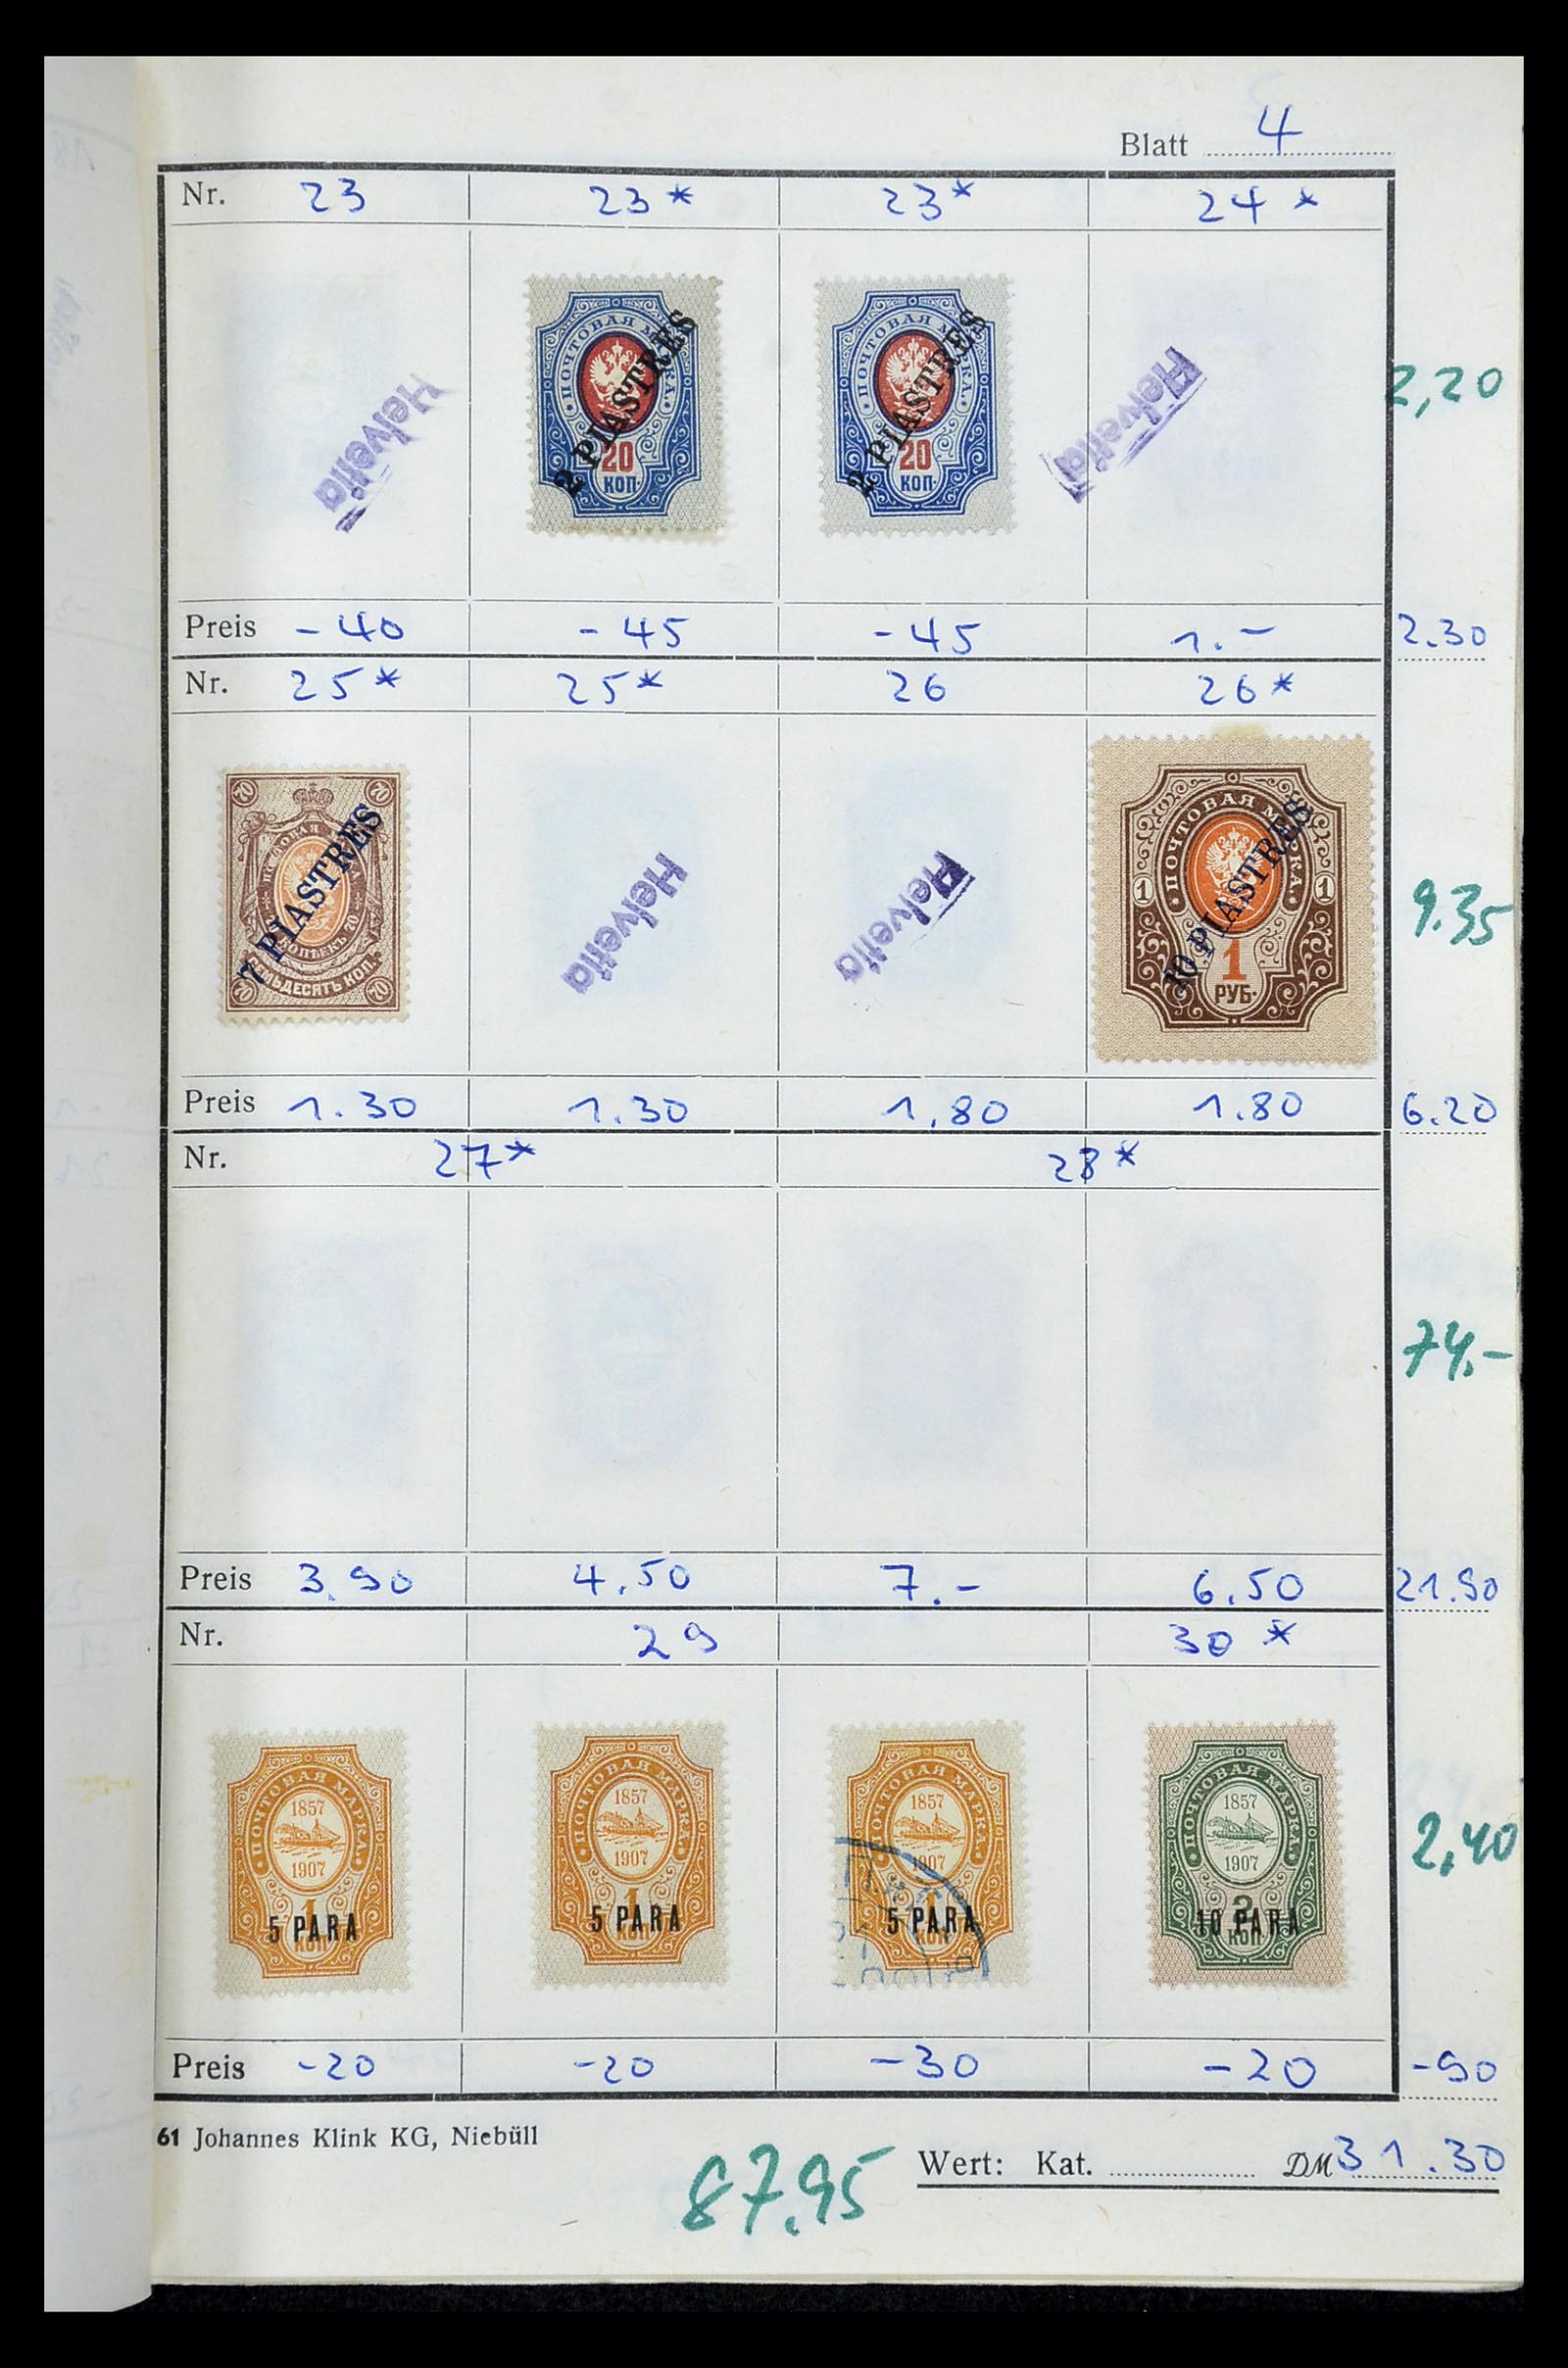 35046 020 - Postzegelverzameling 35046 Russische gebieden 1870-1930.